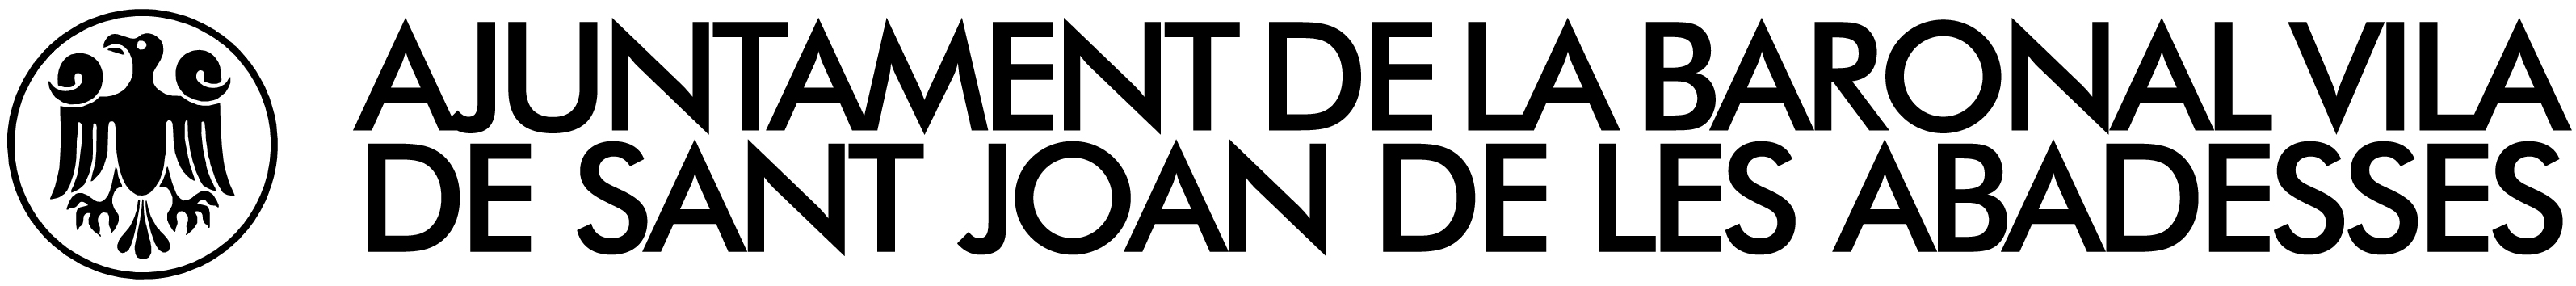 Logotip allargat B/N. Ajuntament de la Baronal Vila de Sant Joan de les Abadesses